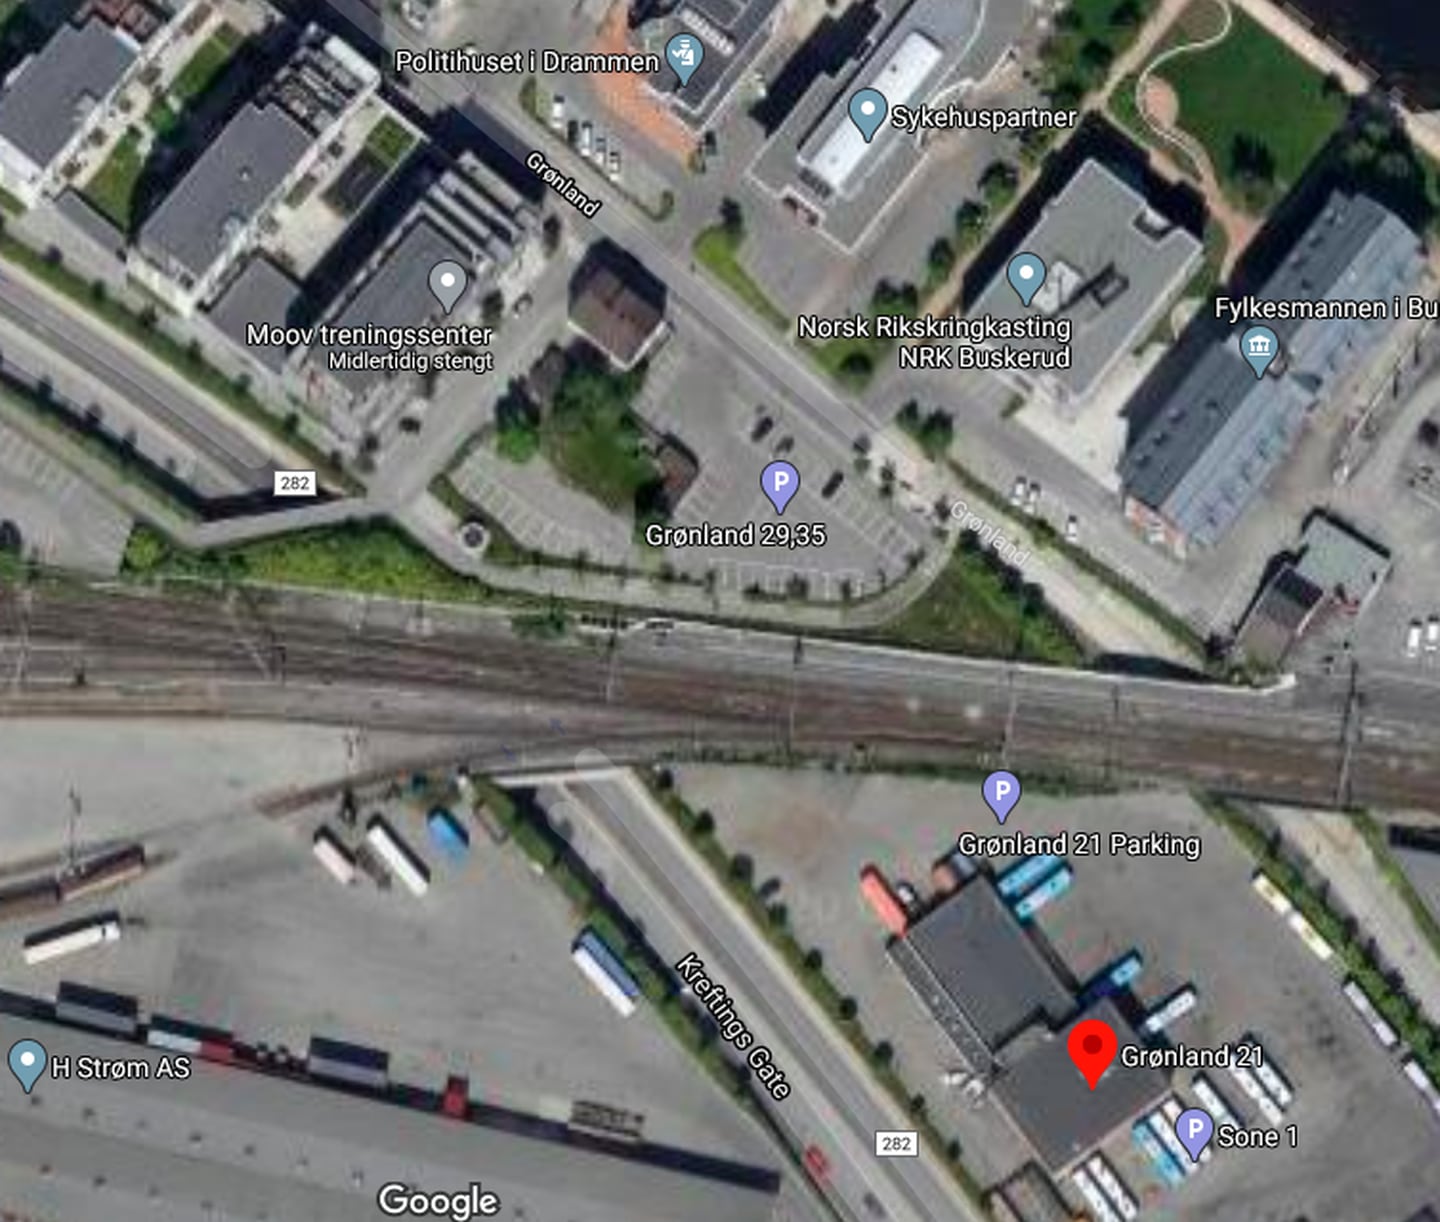 Parkeringsplassene ved Grønland 21, Grønland 29-35 og langs Kreftings gate ligger nær jernbanen, og mulighetene for parkering her vil bli begrenset i forbindelse med jernbaneutbyggingen.